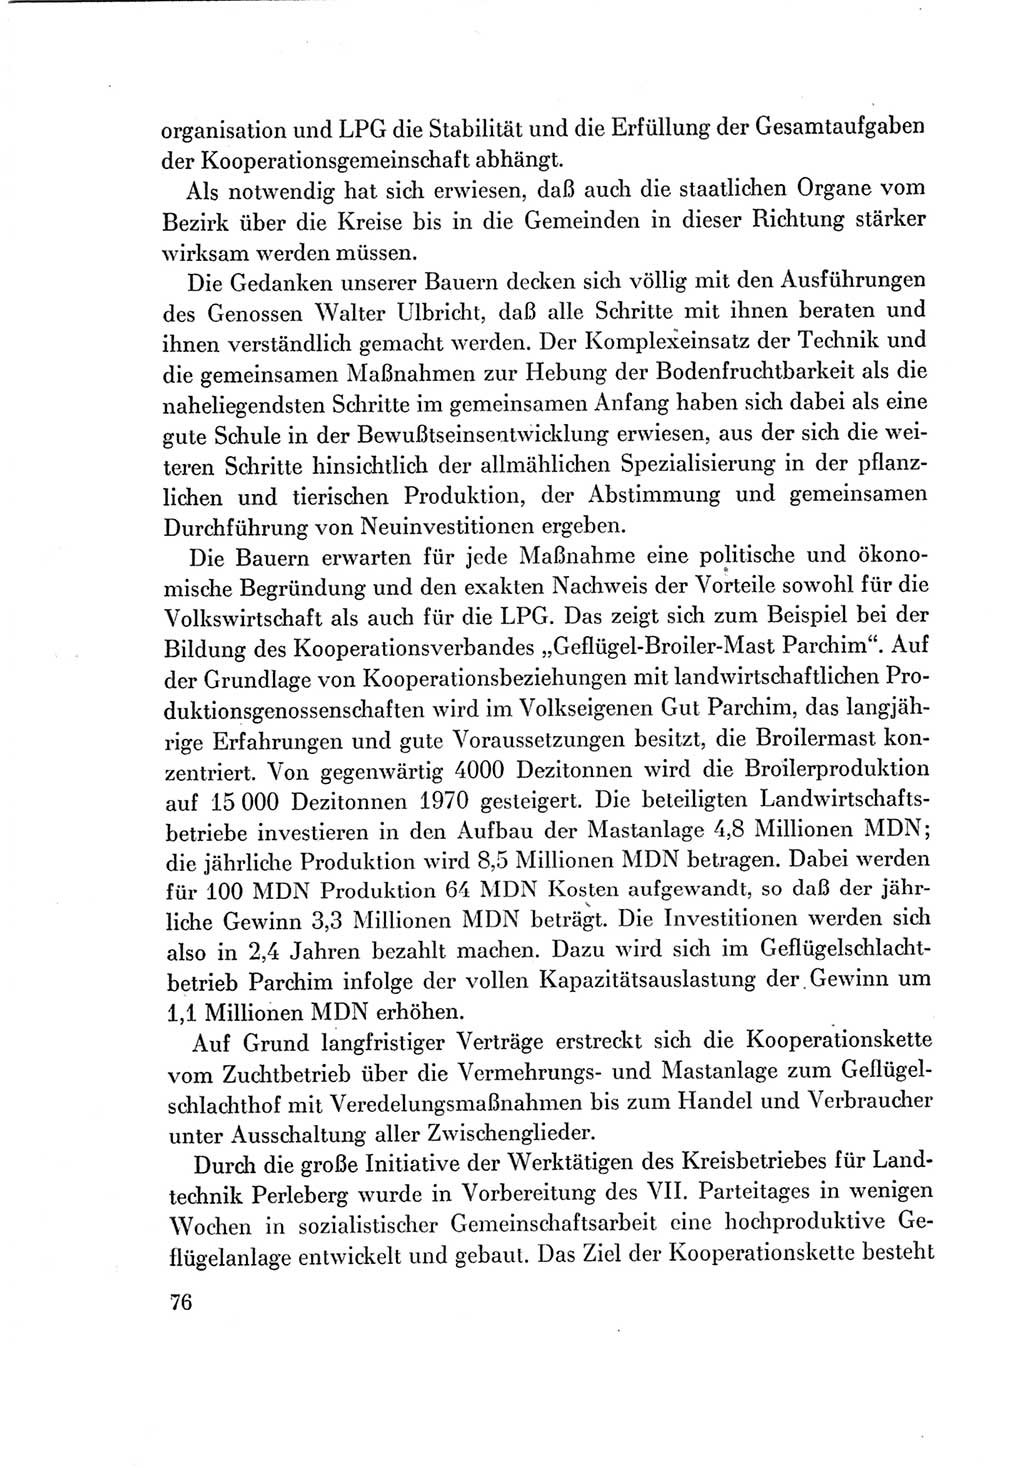 Protokoll der Verhandlungen des Ⅶ. Parteitages der Sozialistischen Einheitspartei Deutschlands (SED) [Deutsche Demokratische Republik (DDR)] 1967, Band Ⅱ, Seite 76 (Prot. Verh. Ⅶ. PT SED DDR 1967, Bd. Ⅱ, S. 76)